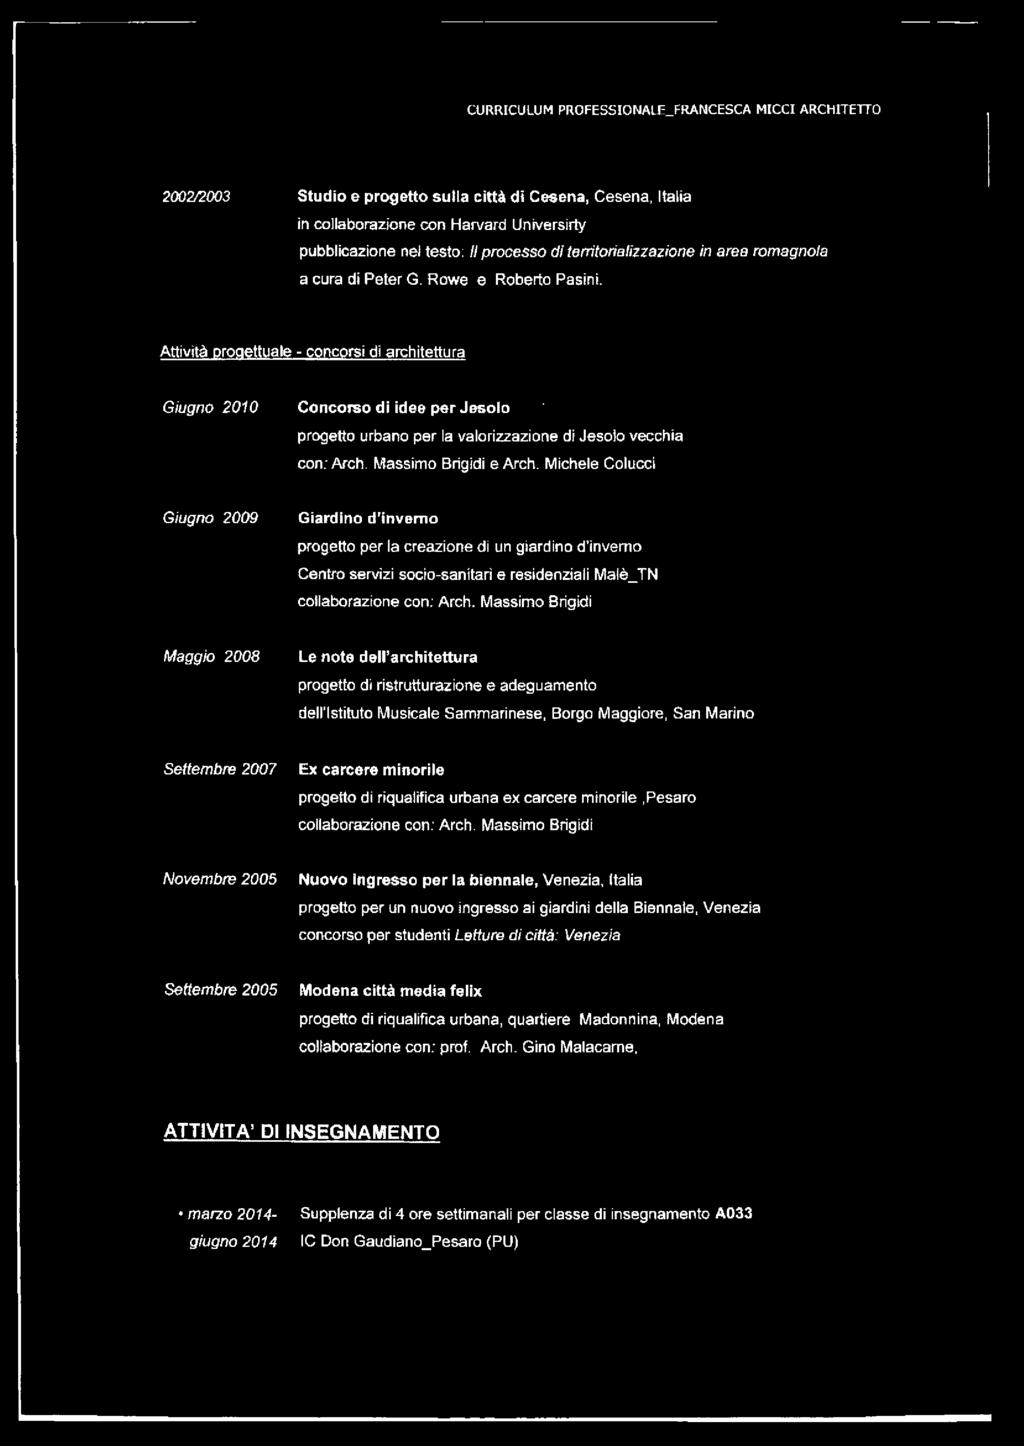 Attività progettuale - concorsi di architettura Giugno 2010 Concorso di idee per Jesolo ' progetto urbano per la valorizzazione di Jesolo vecchia con: Arch. Massimo Brigidi e Arch.